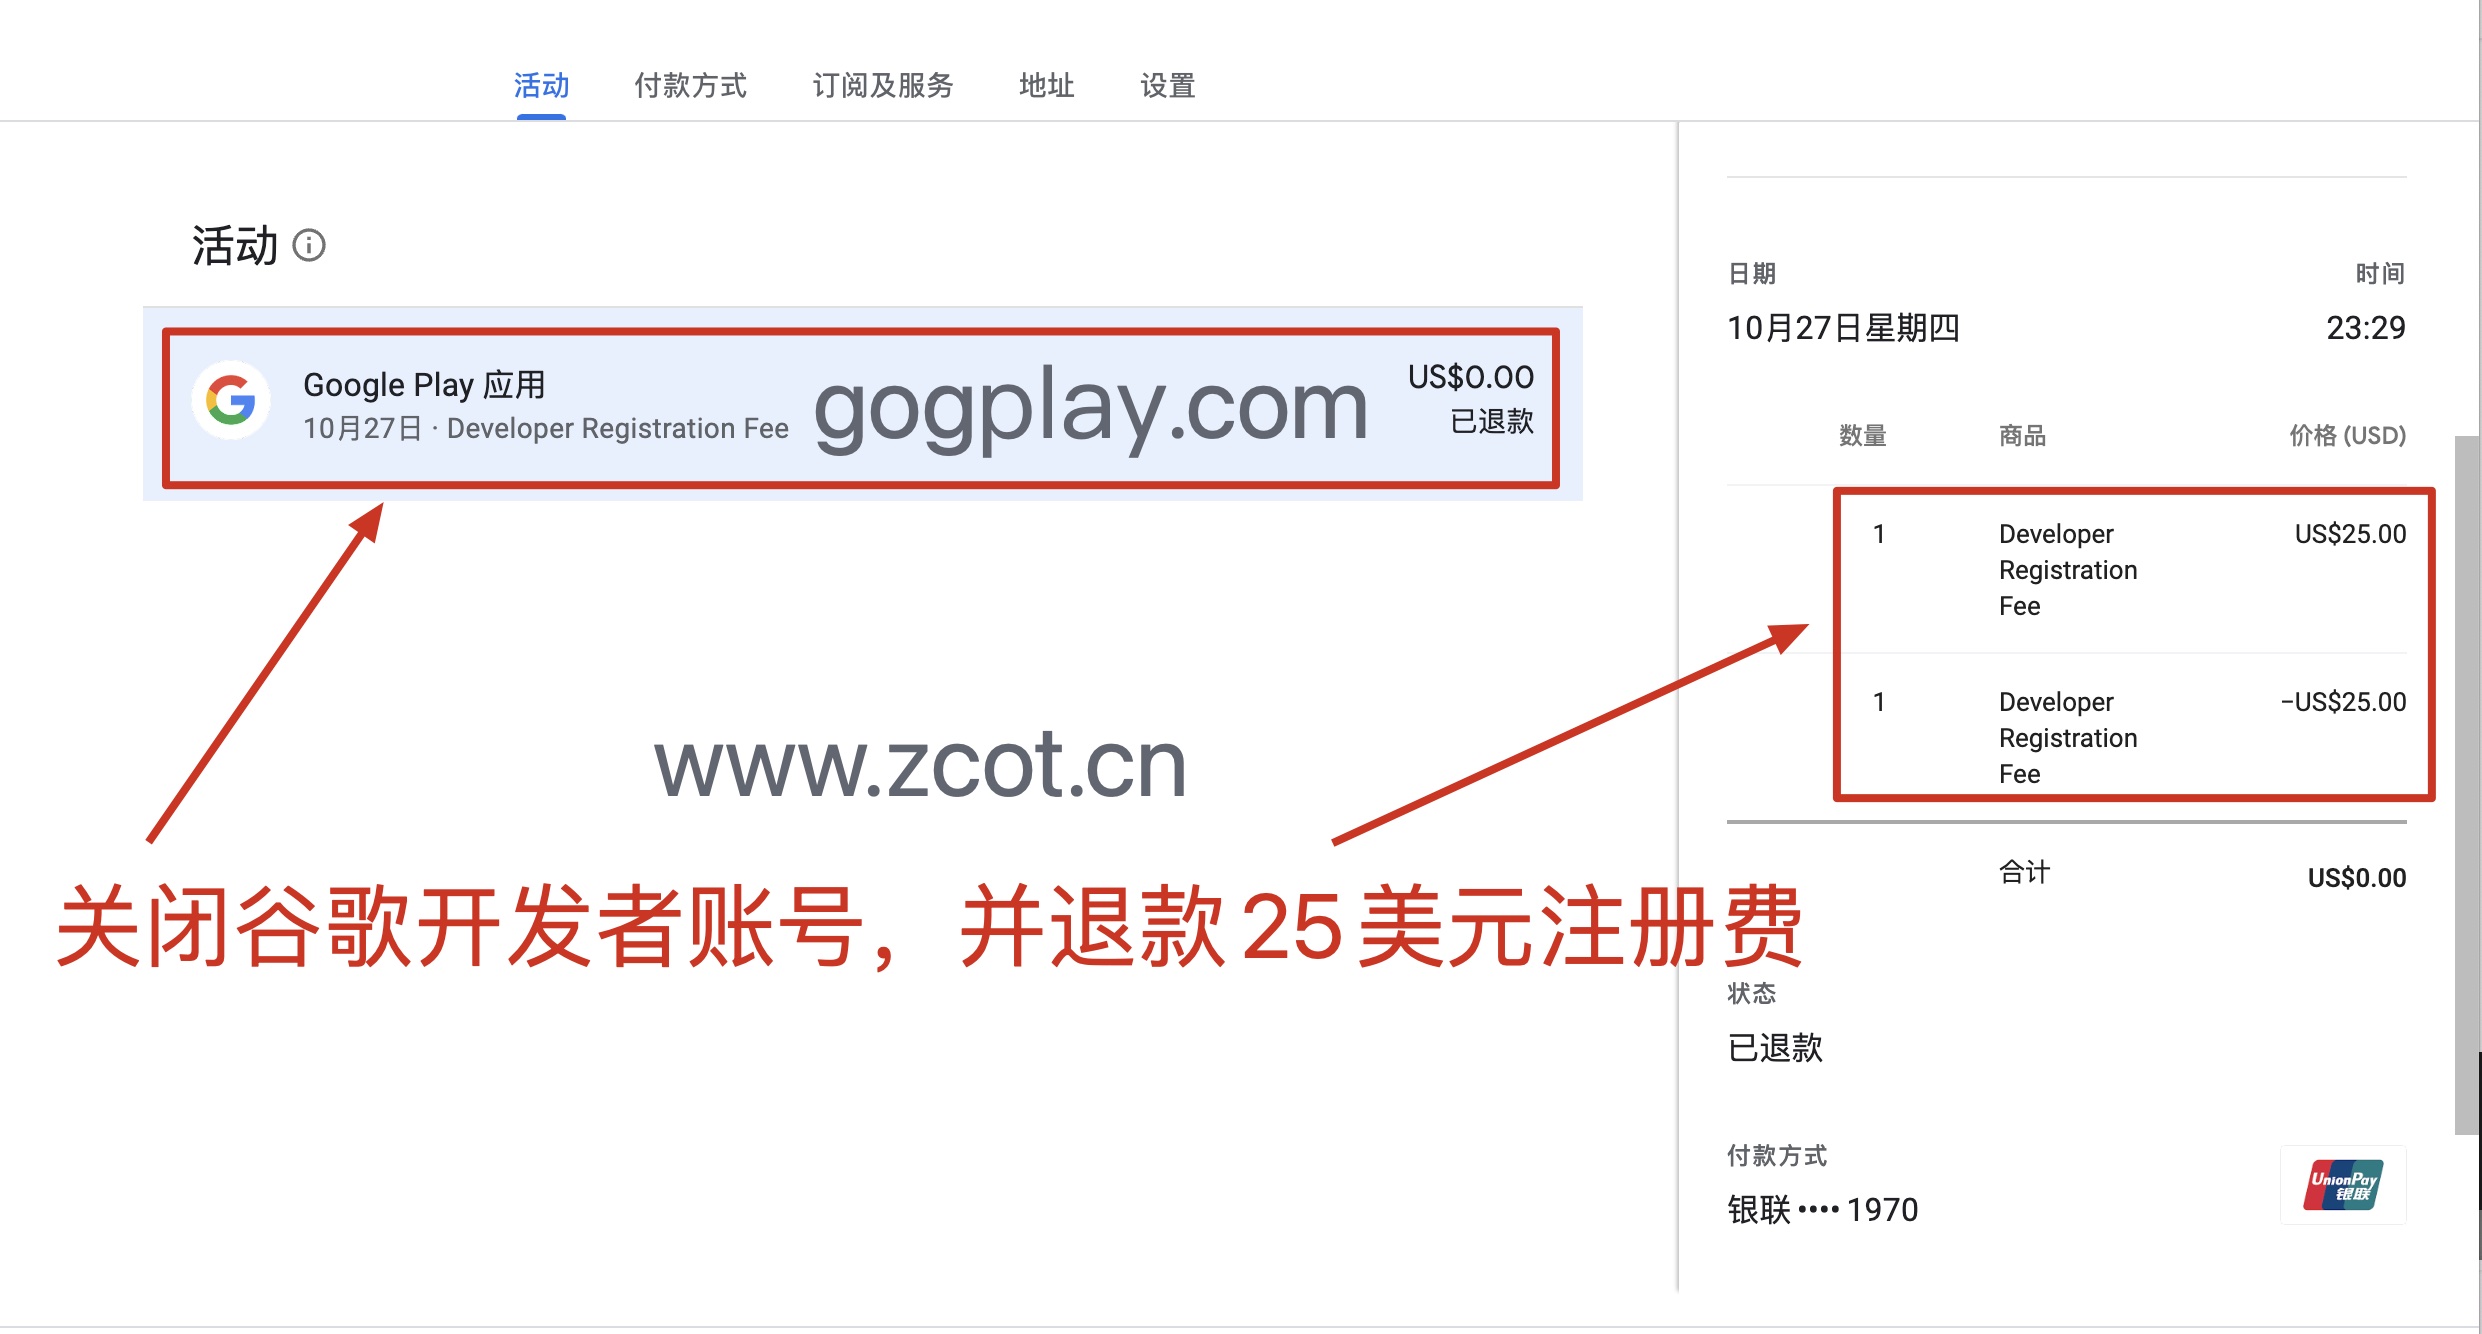 谷歌开发者能变更注册国家吗，google play商家付款资料国家能从中国改成新加坡吗？